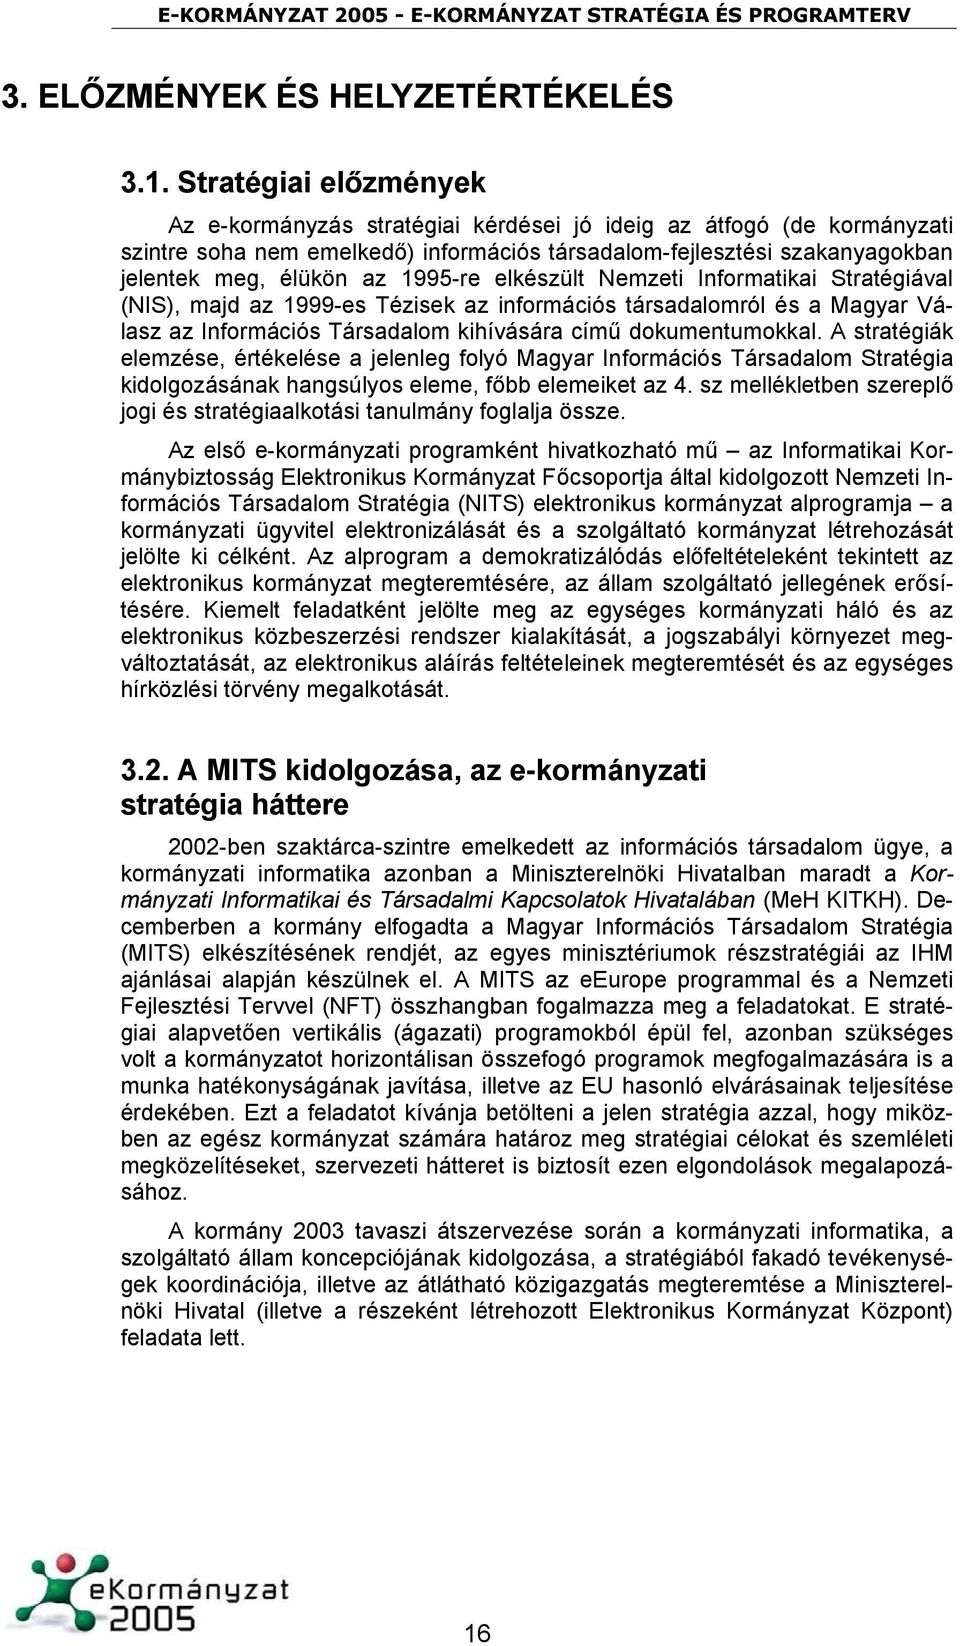 1995-re elkészült Nemzeti Informatikai Stratégiával (NIS), majd az 1999-es Tézisek az információs társadalomról és a Magyar Válasz az Információs Társadalom kihívására című dokumentumokkal.